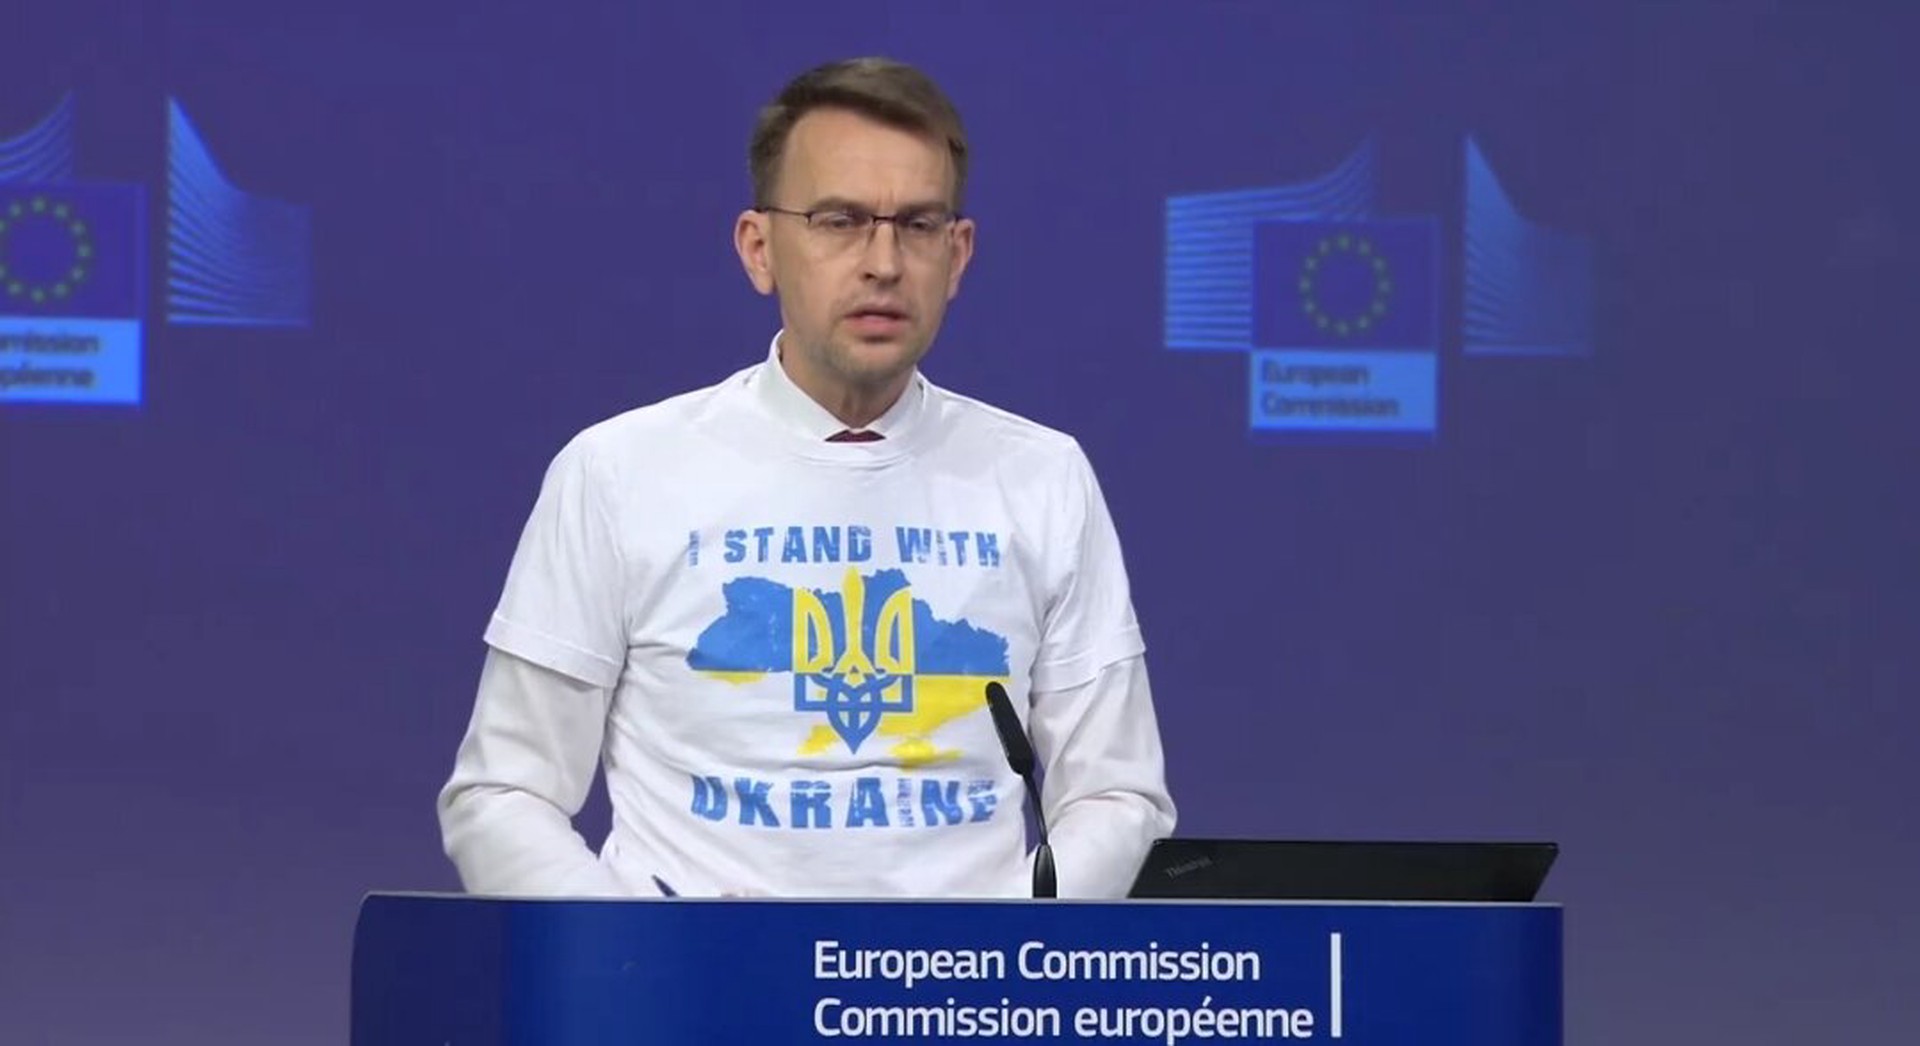 Представителя Еврокомиссии раскритиковали из-за футболки с символикой Украины